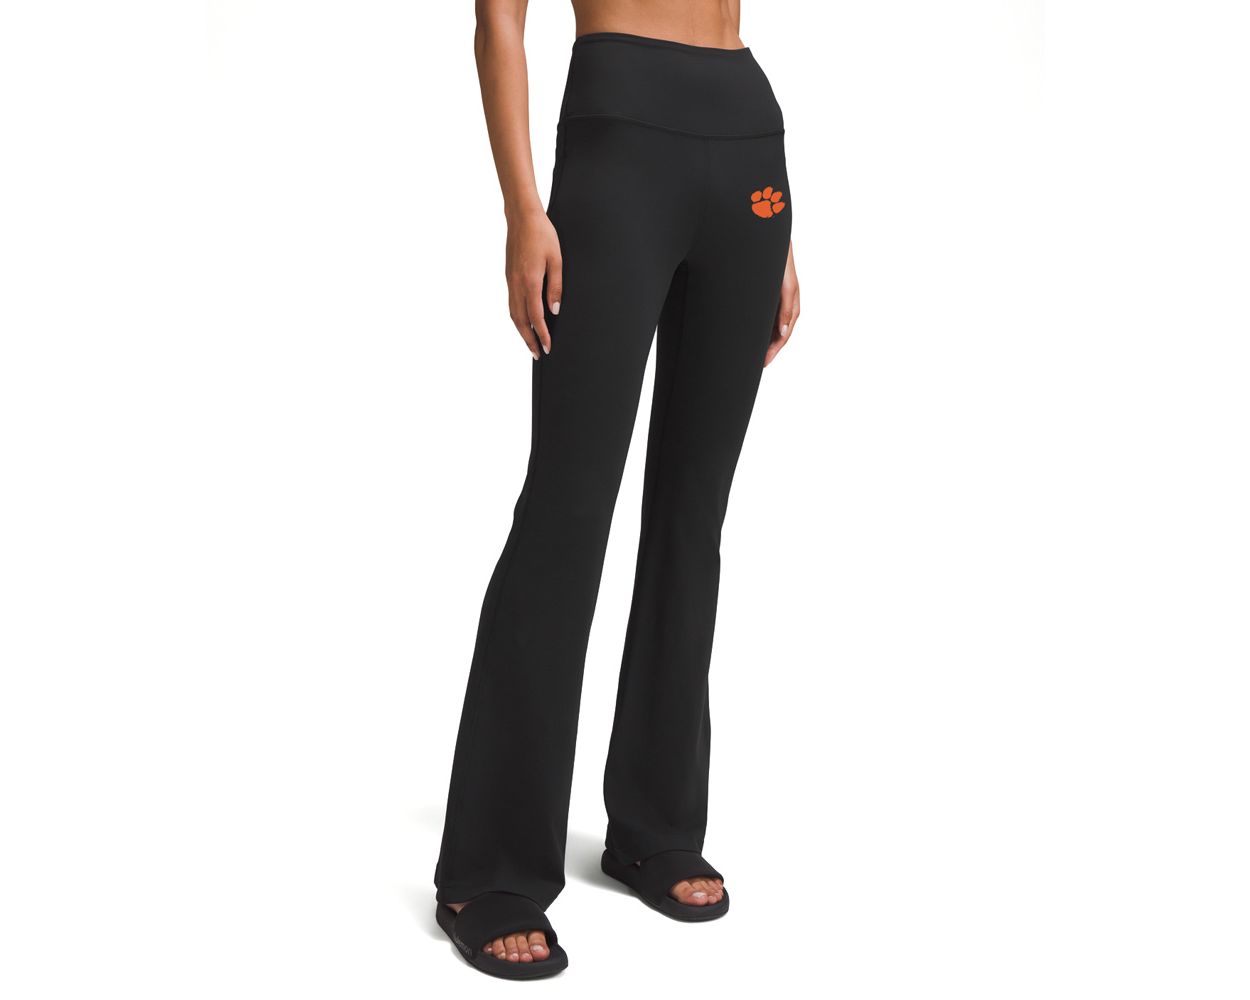 Women's Yoga Flare Pants/black